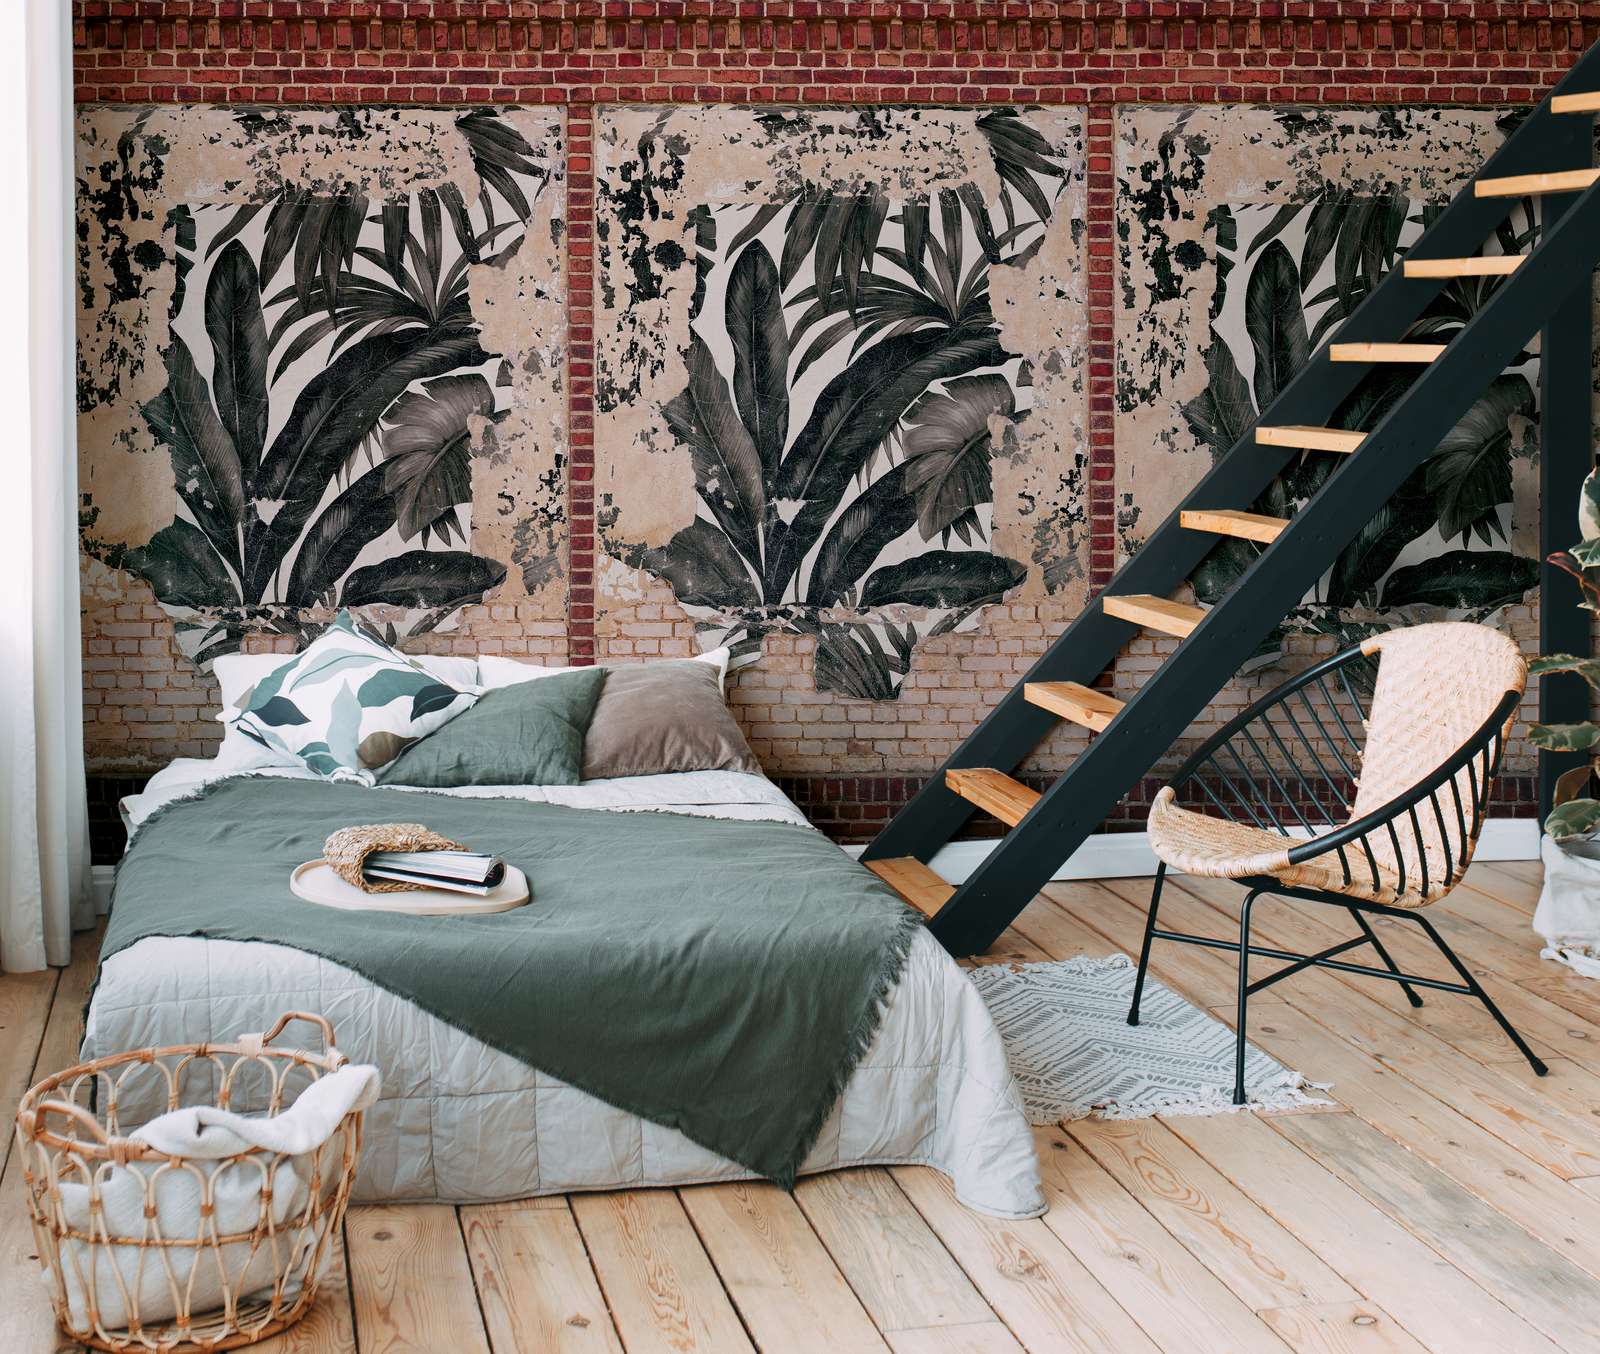             Ziegelsteinwand Tapete mit Palmenblättern im Used Look – Braun, Beige, Rot
        